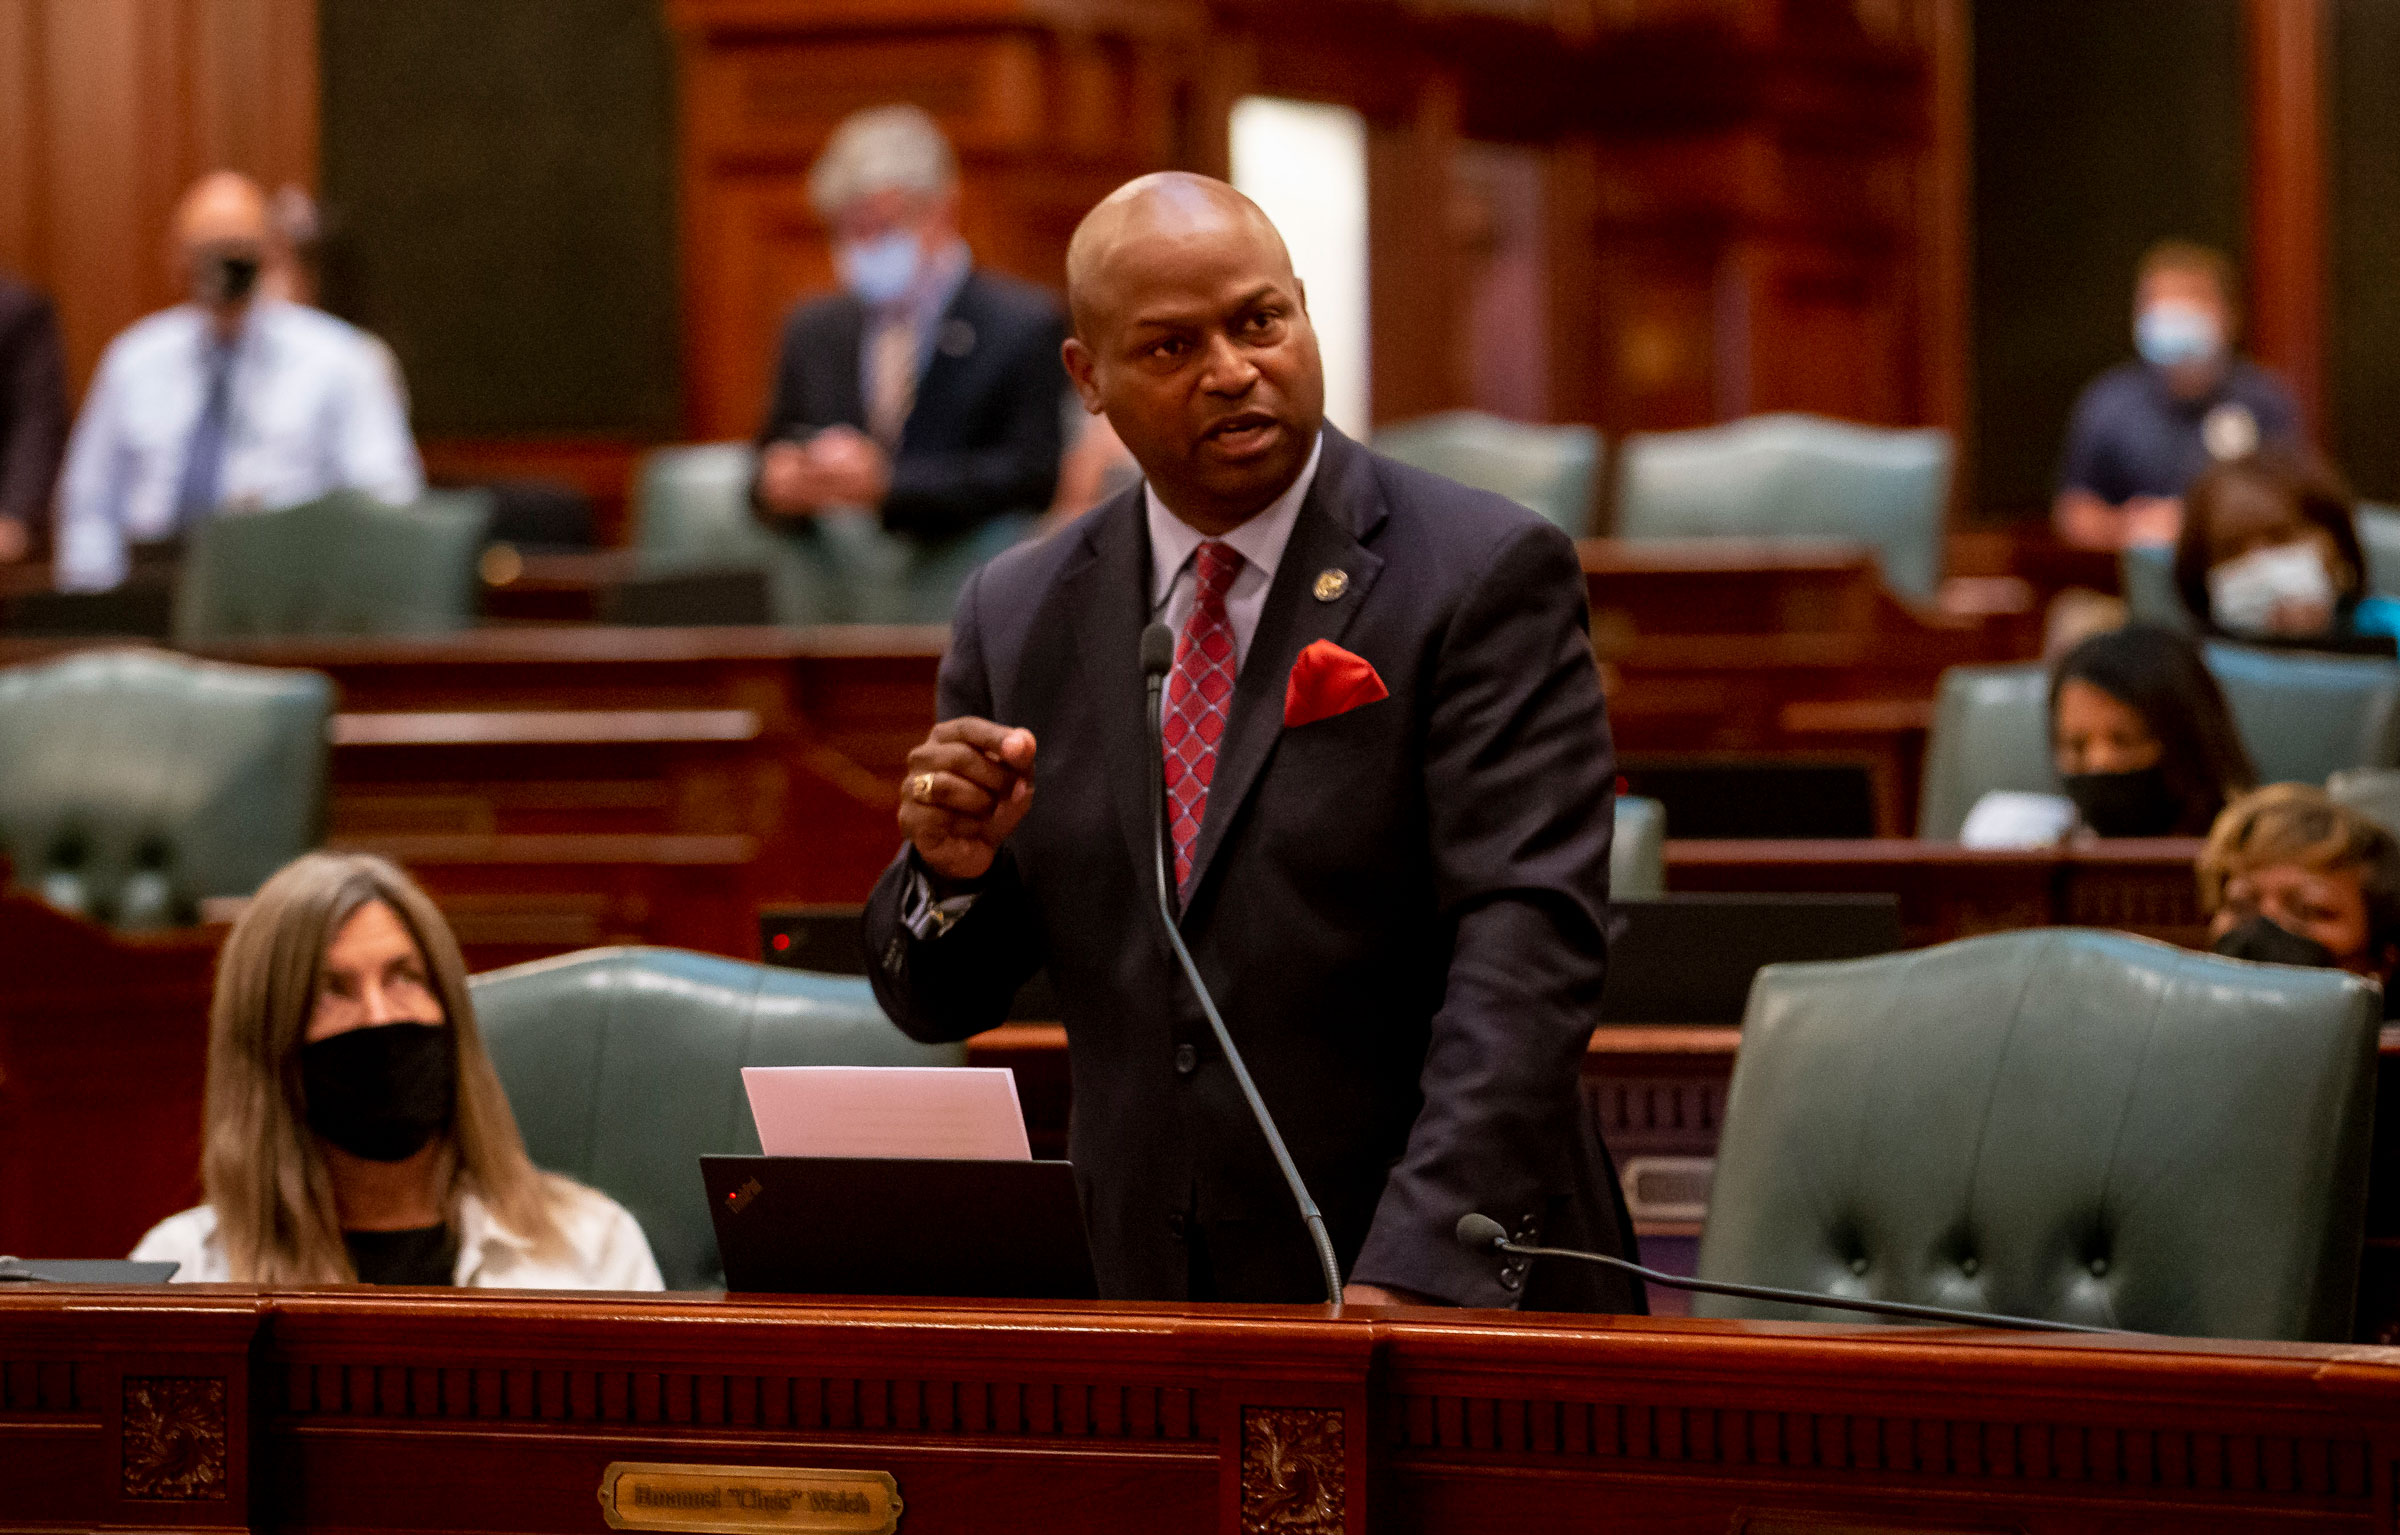 Illinois Speaker of the House Emanuel “Chris” Welch speaks on the floor of the Illinois House of Representatives